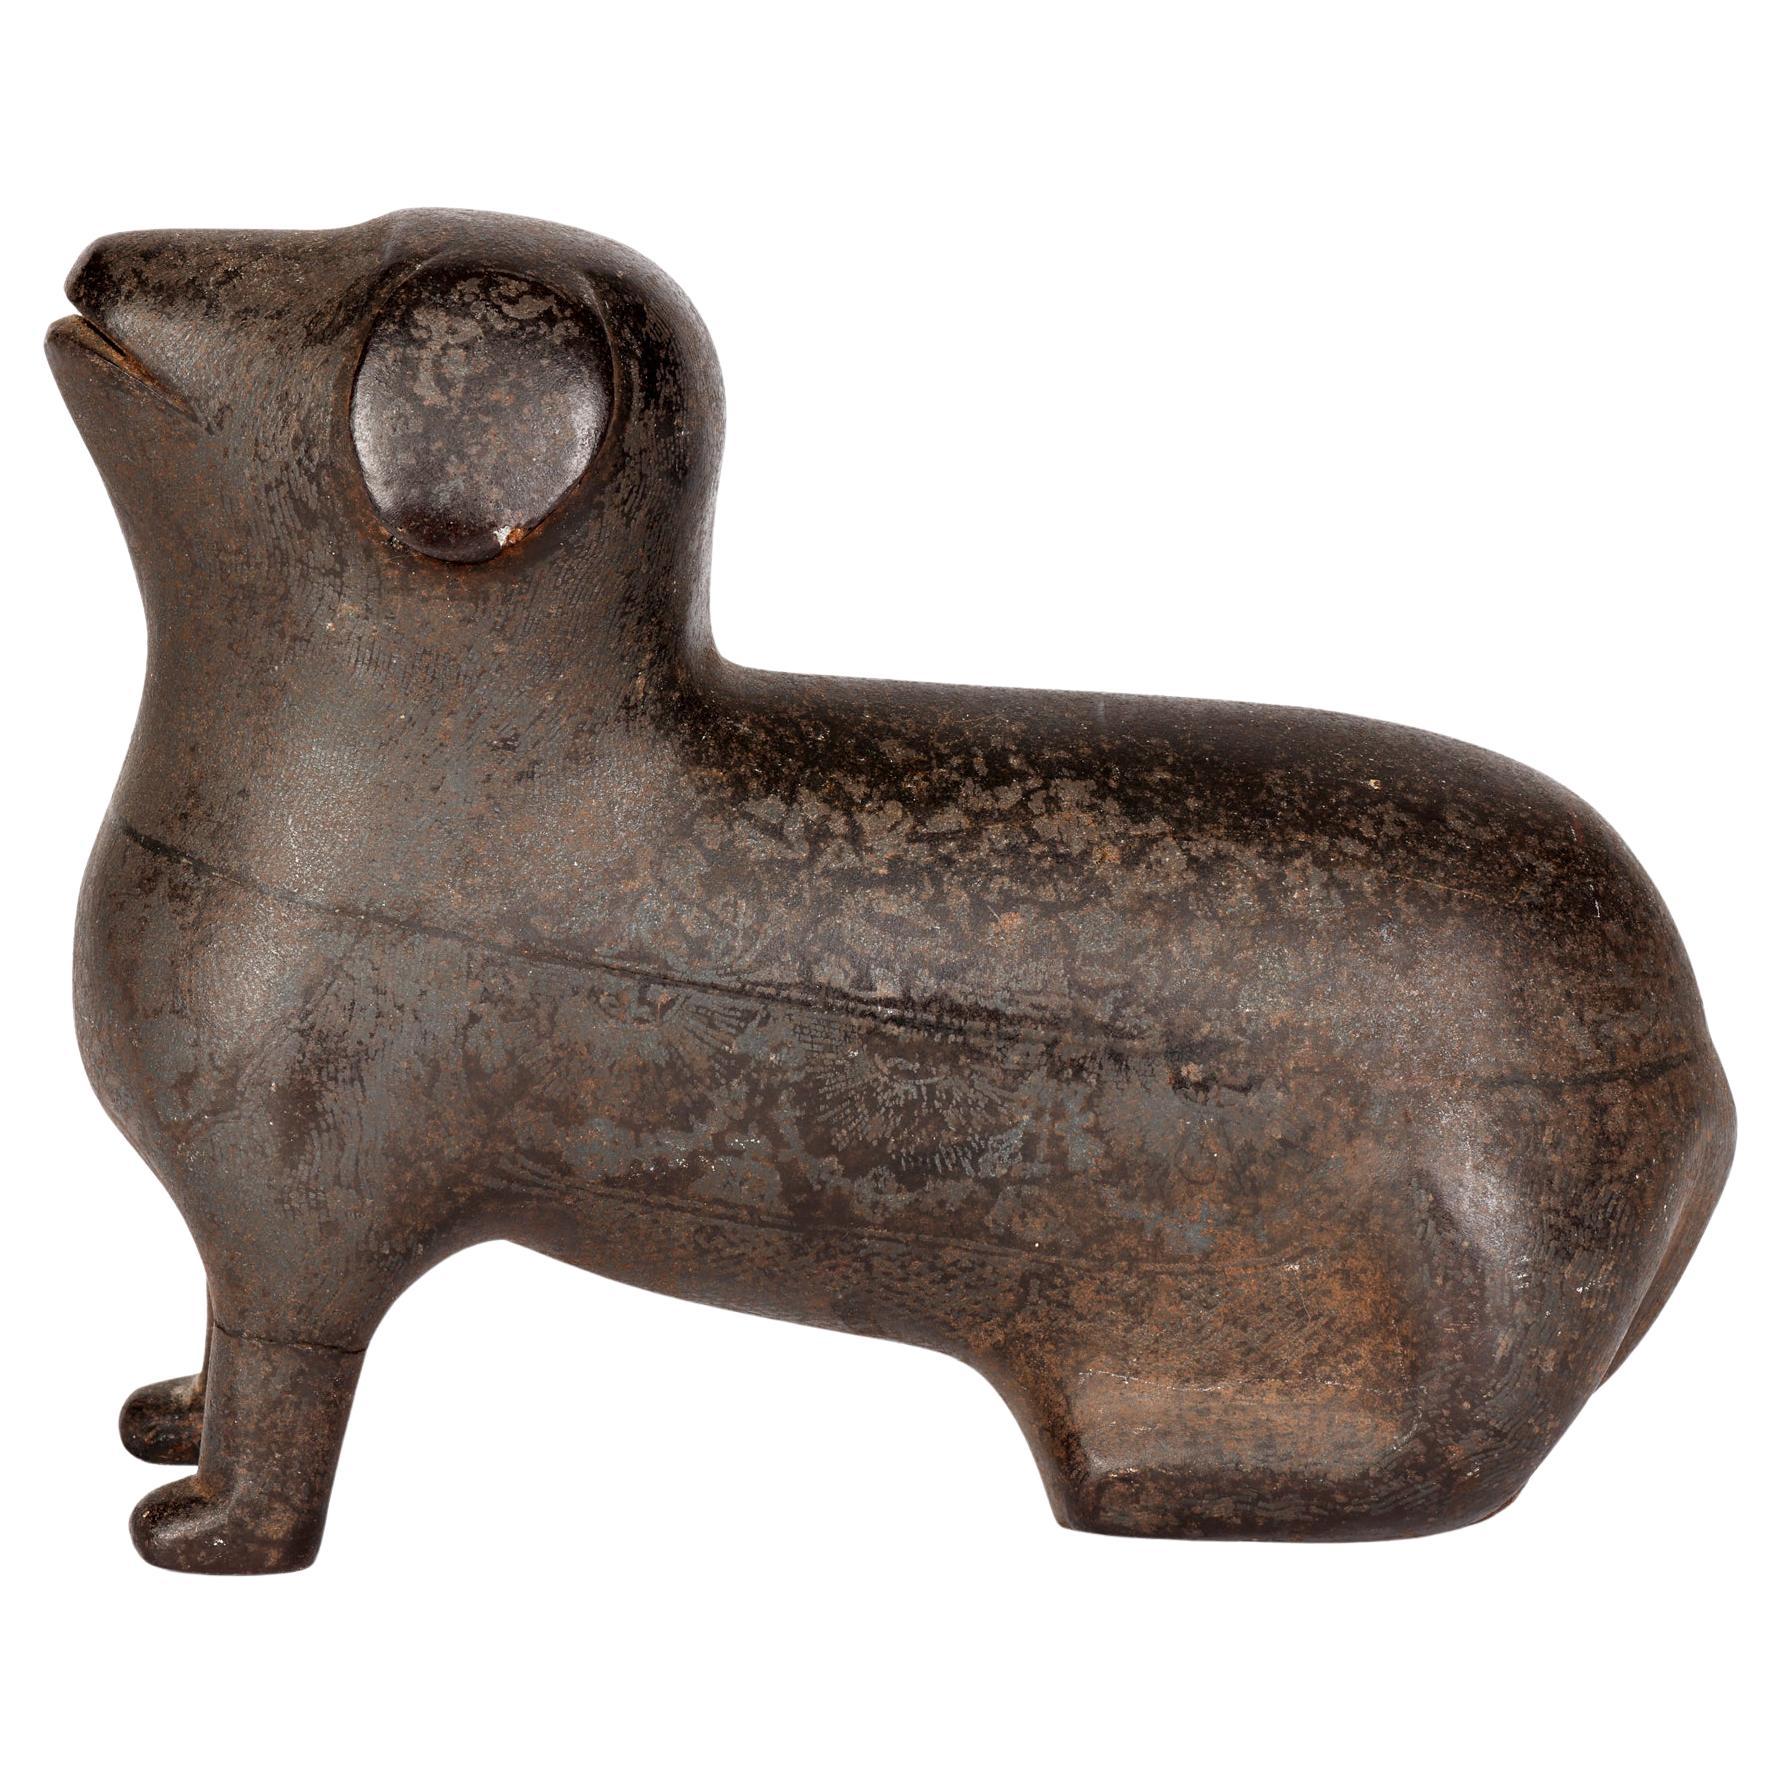 Insolite figurine de chien assis en métal patiné stylisé attribuée au Khond indien